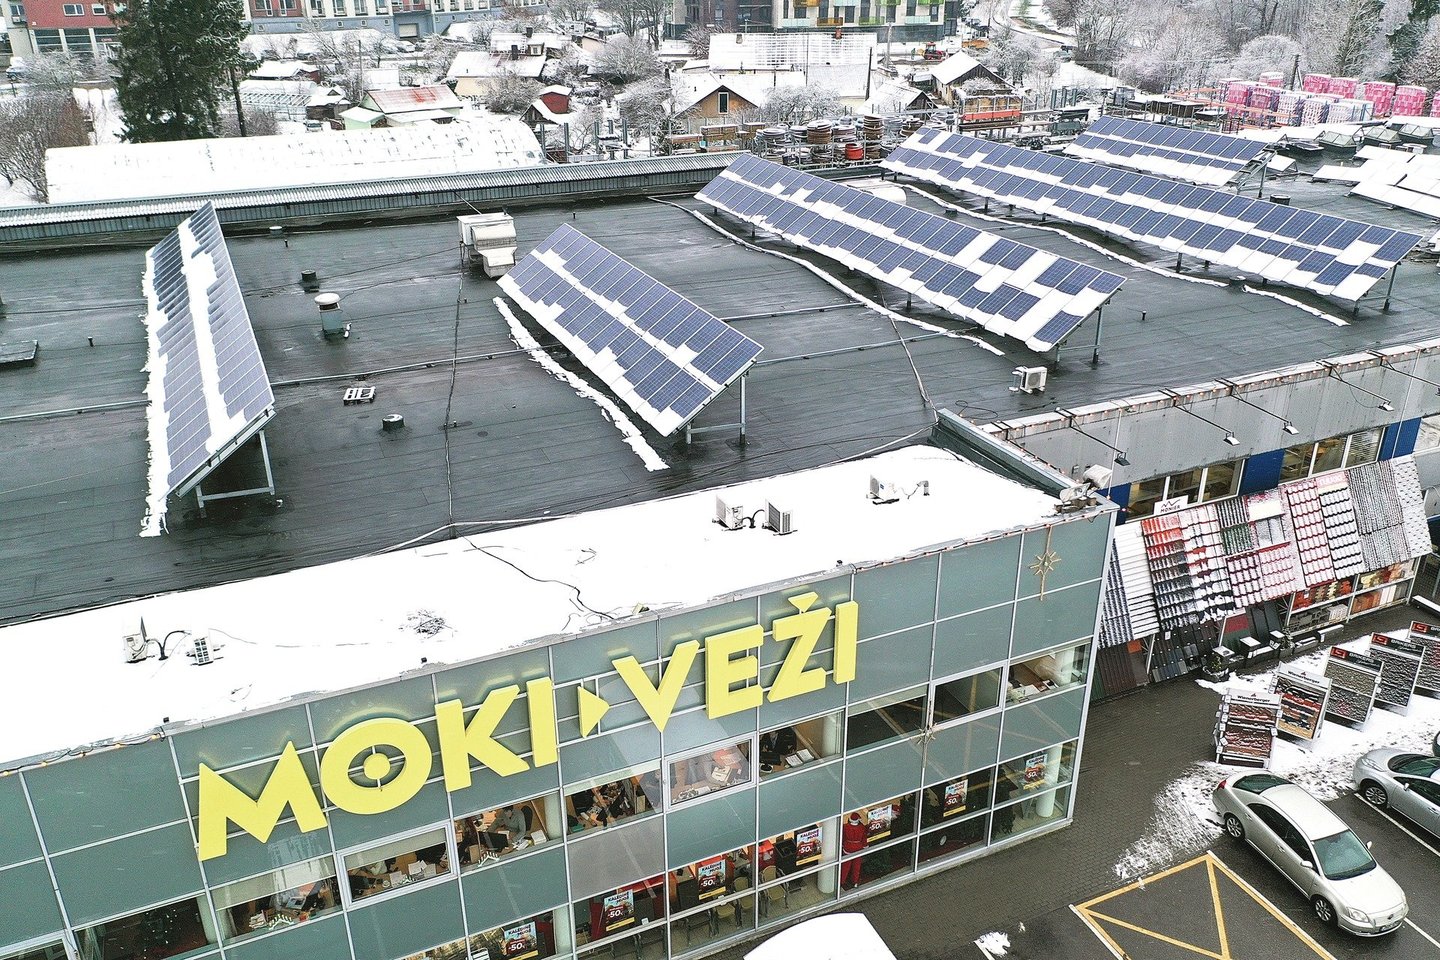 Pusė ant šios parduotuvės įrengtų saulės modulių priklauso vienai, kita pusė – kitai su Seimo nariu D.Kreiviu ir jo partneriais susijusiai įmonei, todėl abi bendrovės teisėtai gauna skatinamąjį tarifą iš VIAP biudžeto.<br>V.Ščiavinsko nuotr.